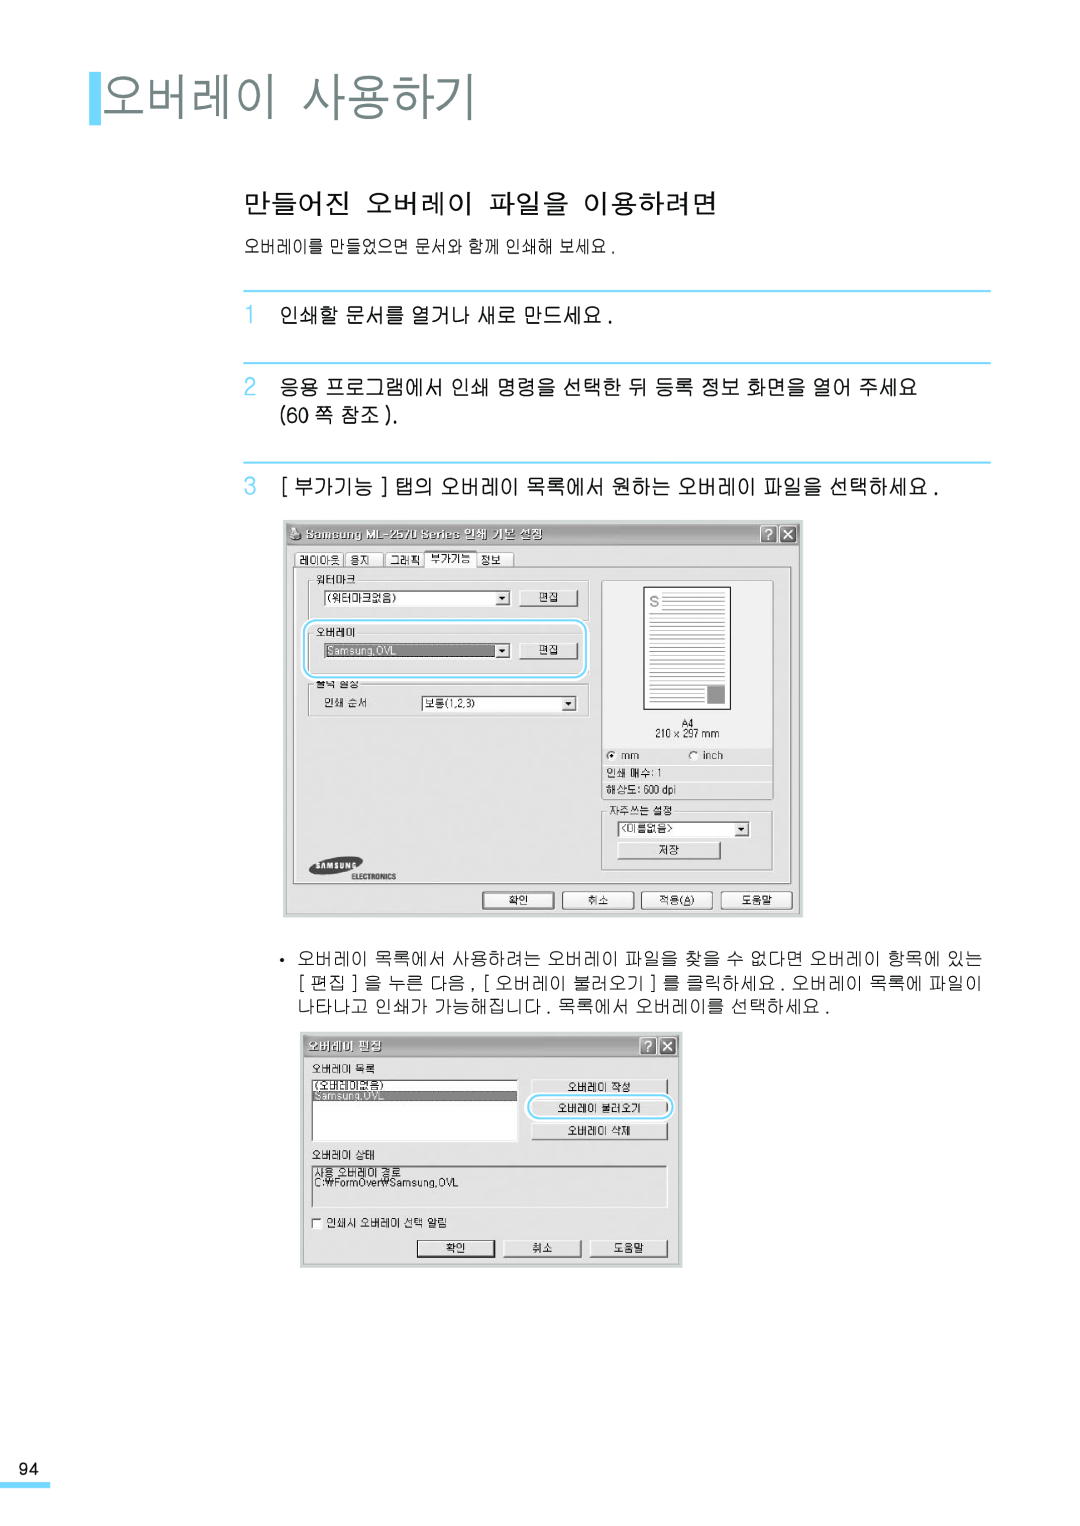 Samsung ML-2571N 오버레이 사용하기, 만들어진 오버레이 파일을 이용하려면, 1 인쇄할 문서를 열거나 새로 만드세요, 2 응용 프로그램에서 인쇄 명령을 선택한 뒤 등록 정보 화면을 열어 주세요 60 쪽 참조 